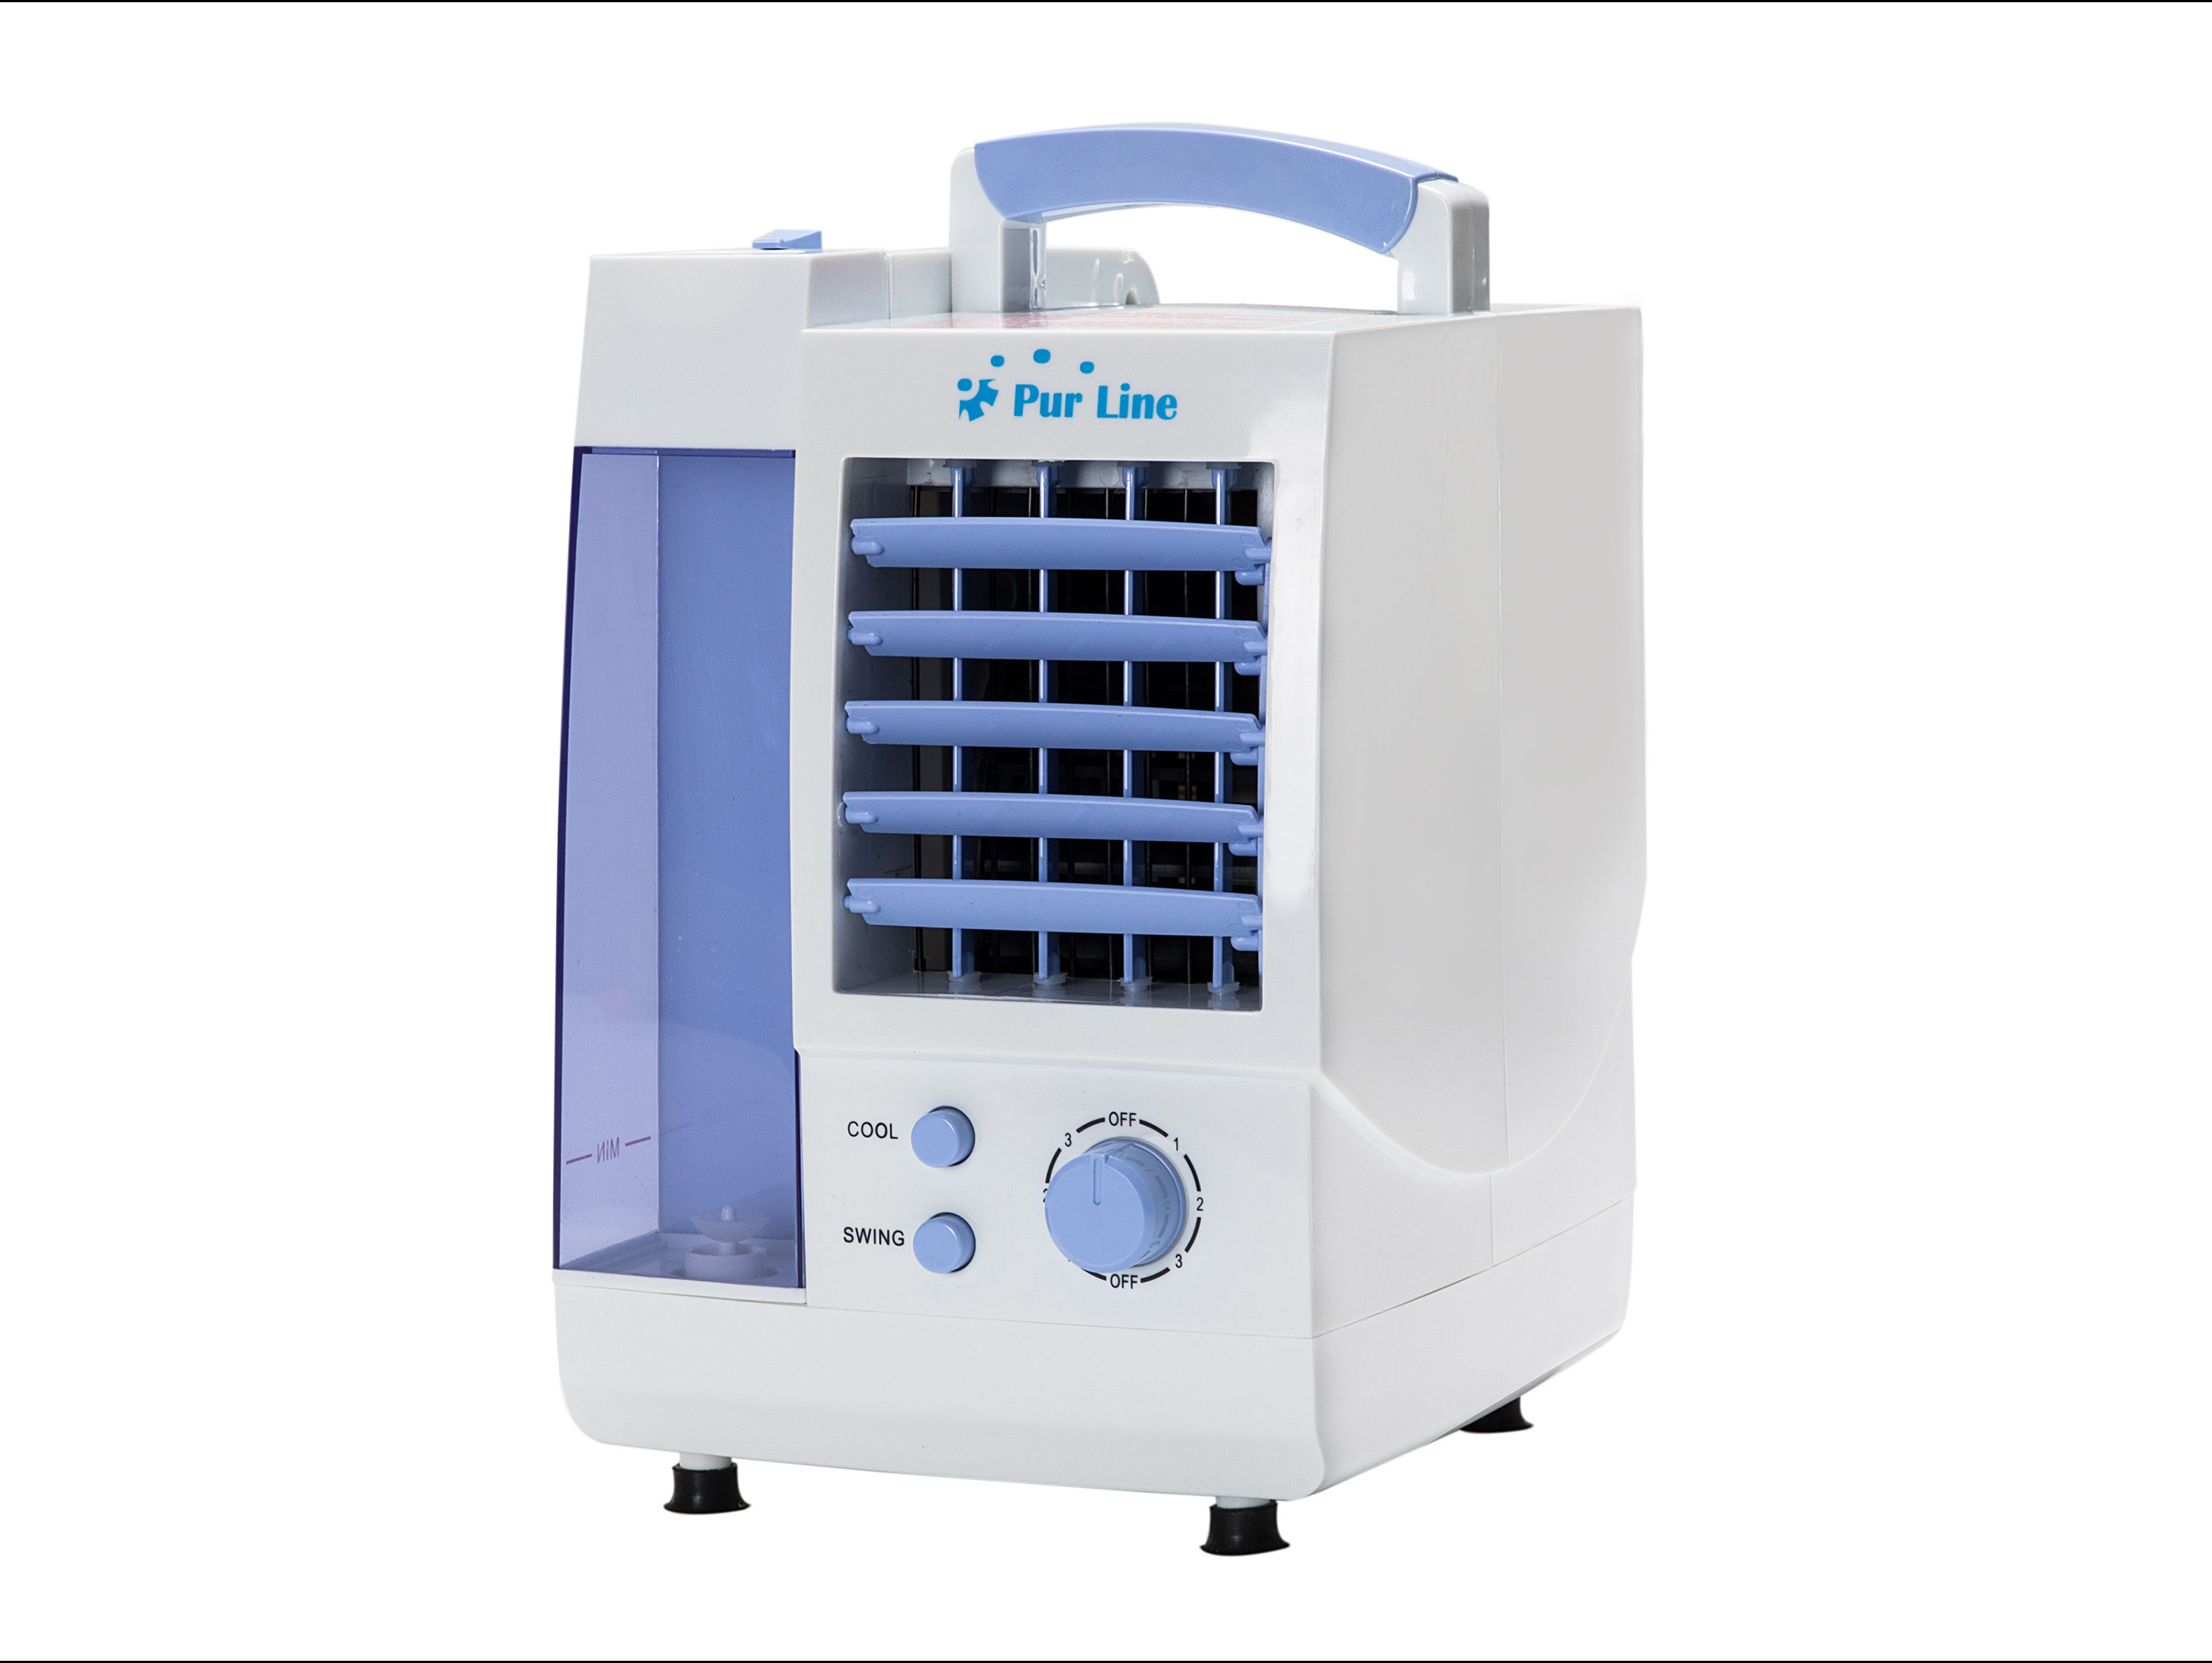 Climatizador Evaporativo Silencioso purline humidificador rafy 30 1 l rafy30 compacto 60w de sobremesa bajo consumo ventilador purificador aire para superficies 12m2 acondicionado